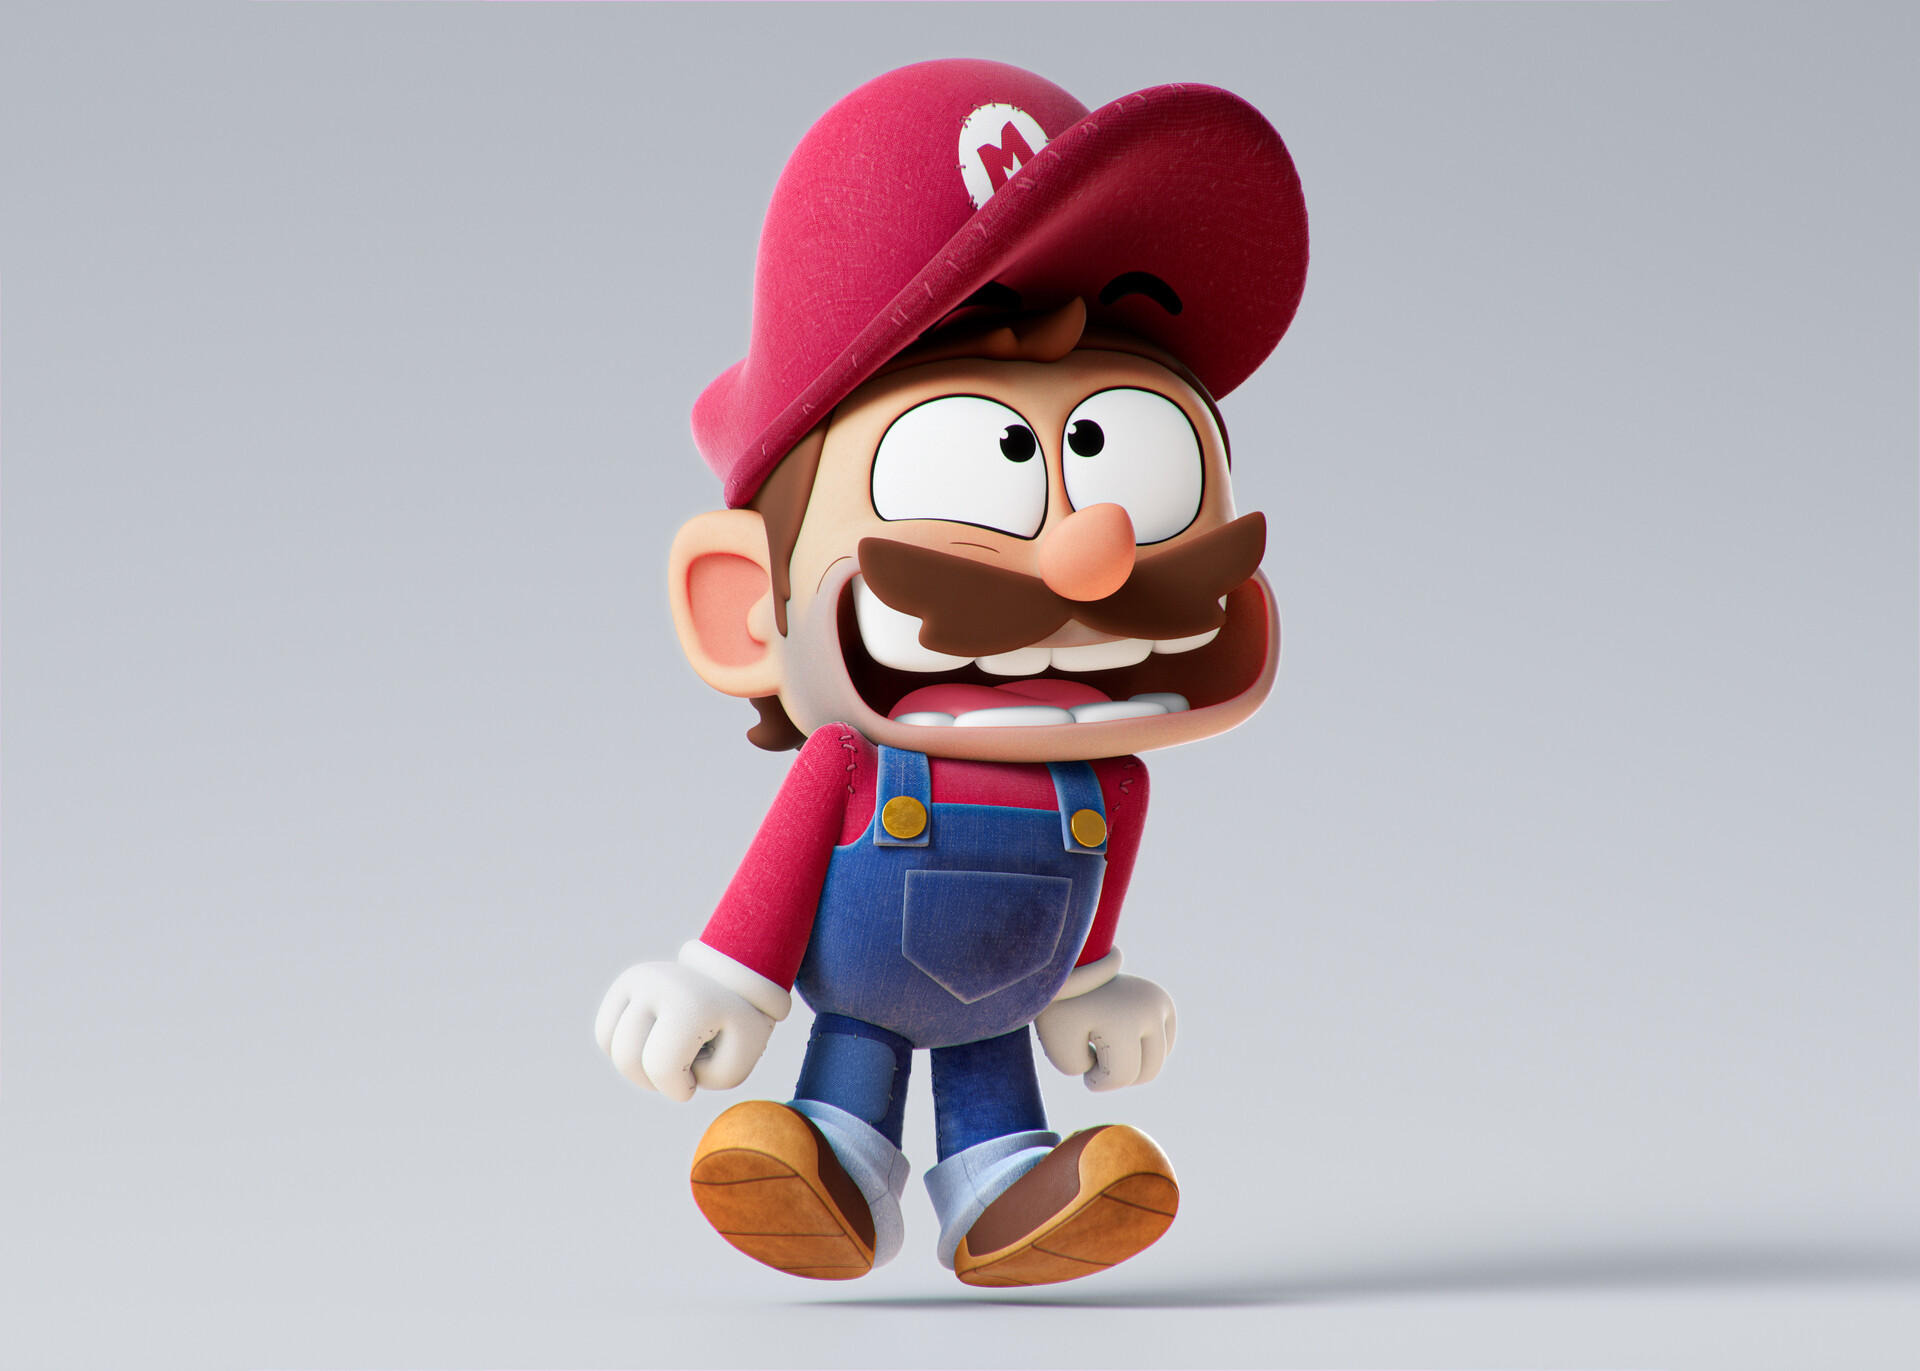 ArtStation - Super Mario PS5 Portrait, jogo mario ps5 